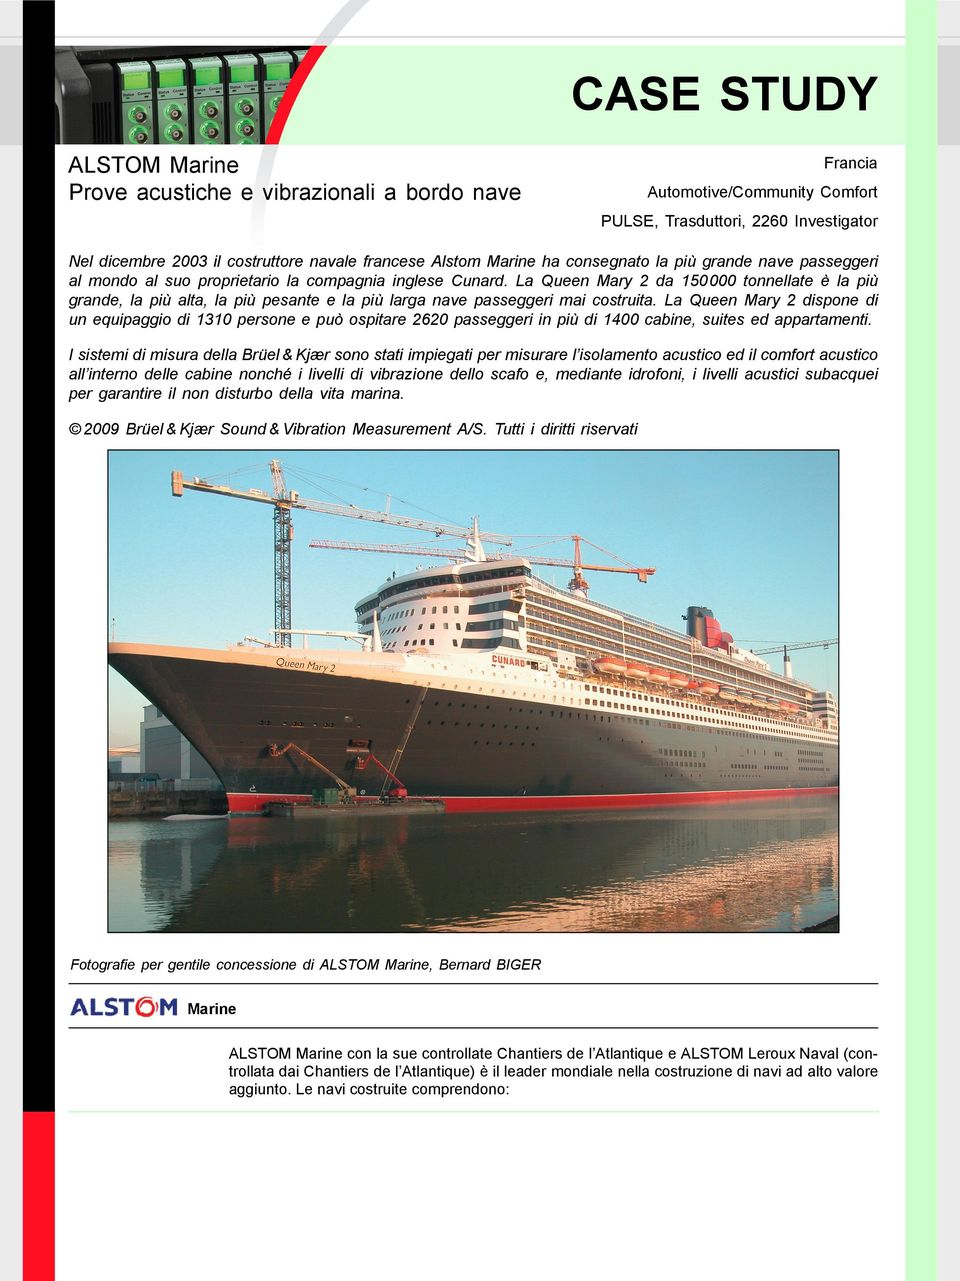 La Queen Mary 2 da 150000 tonnellate è la più grande, la più alta, la più pesante e la più larga nave passeggeri mai costruita.